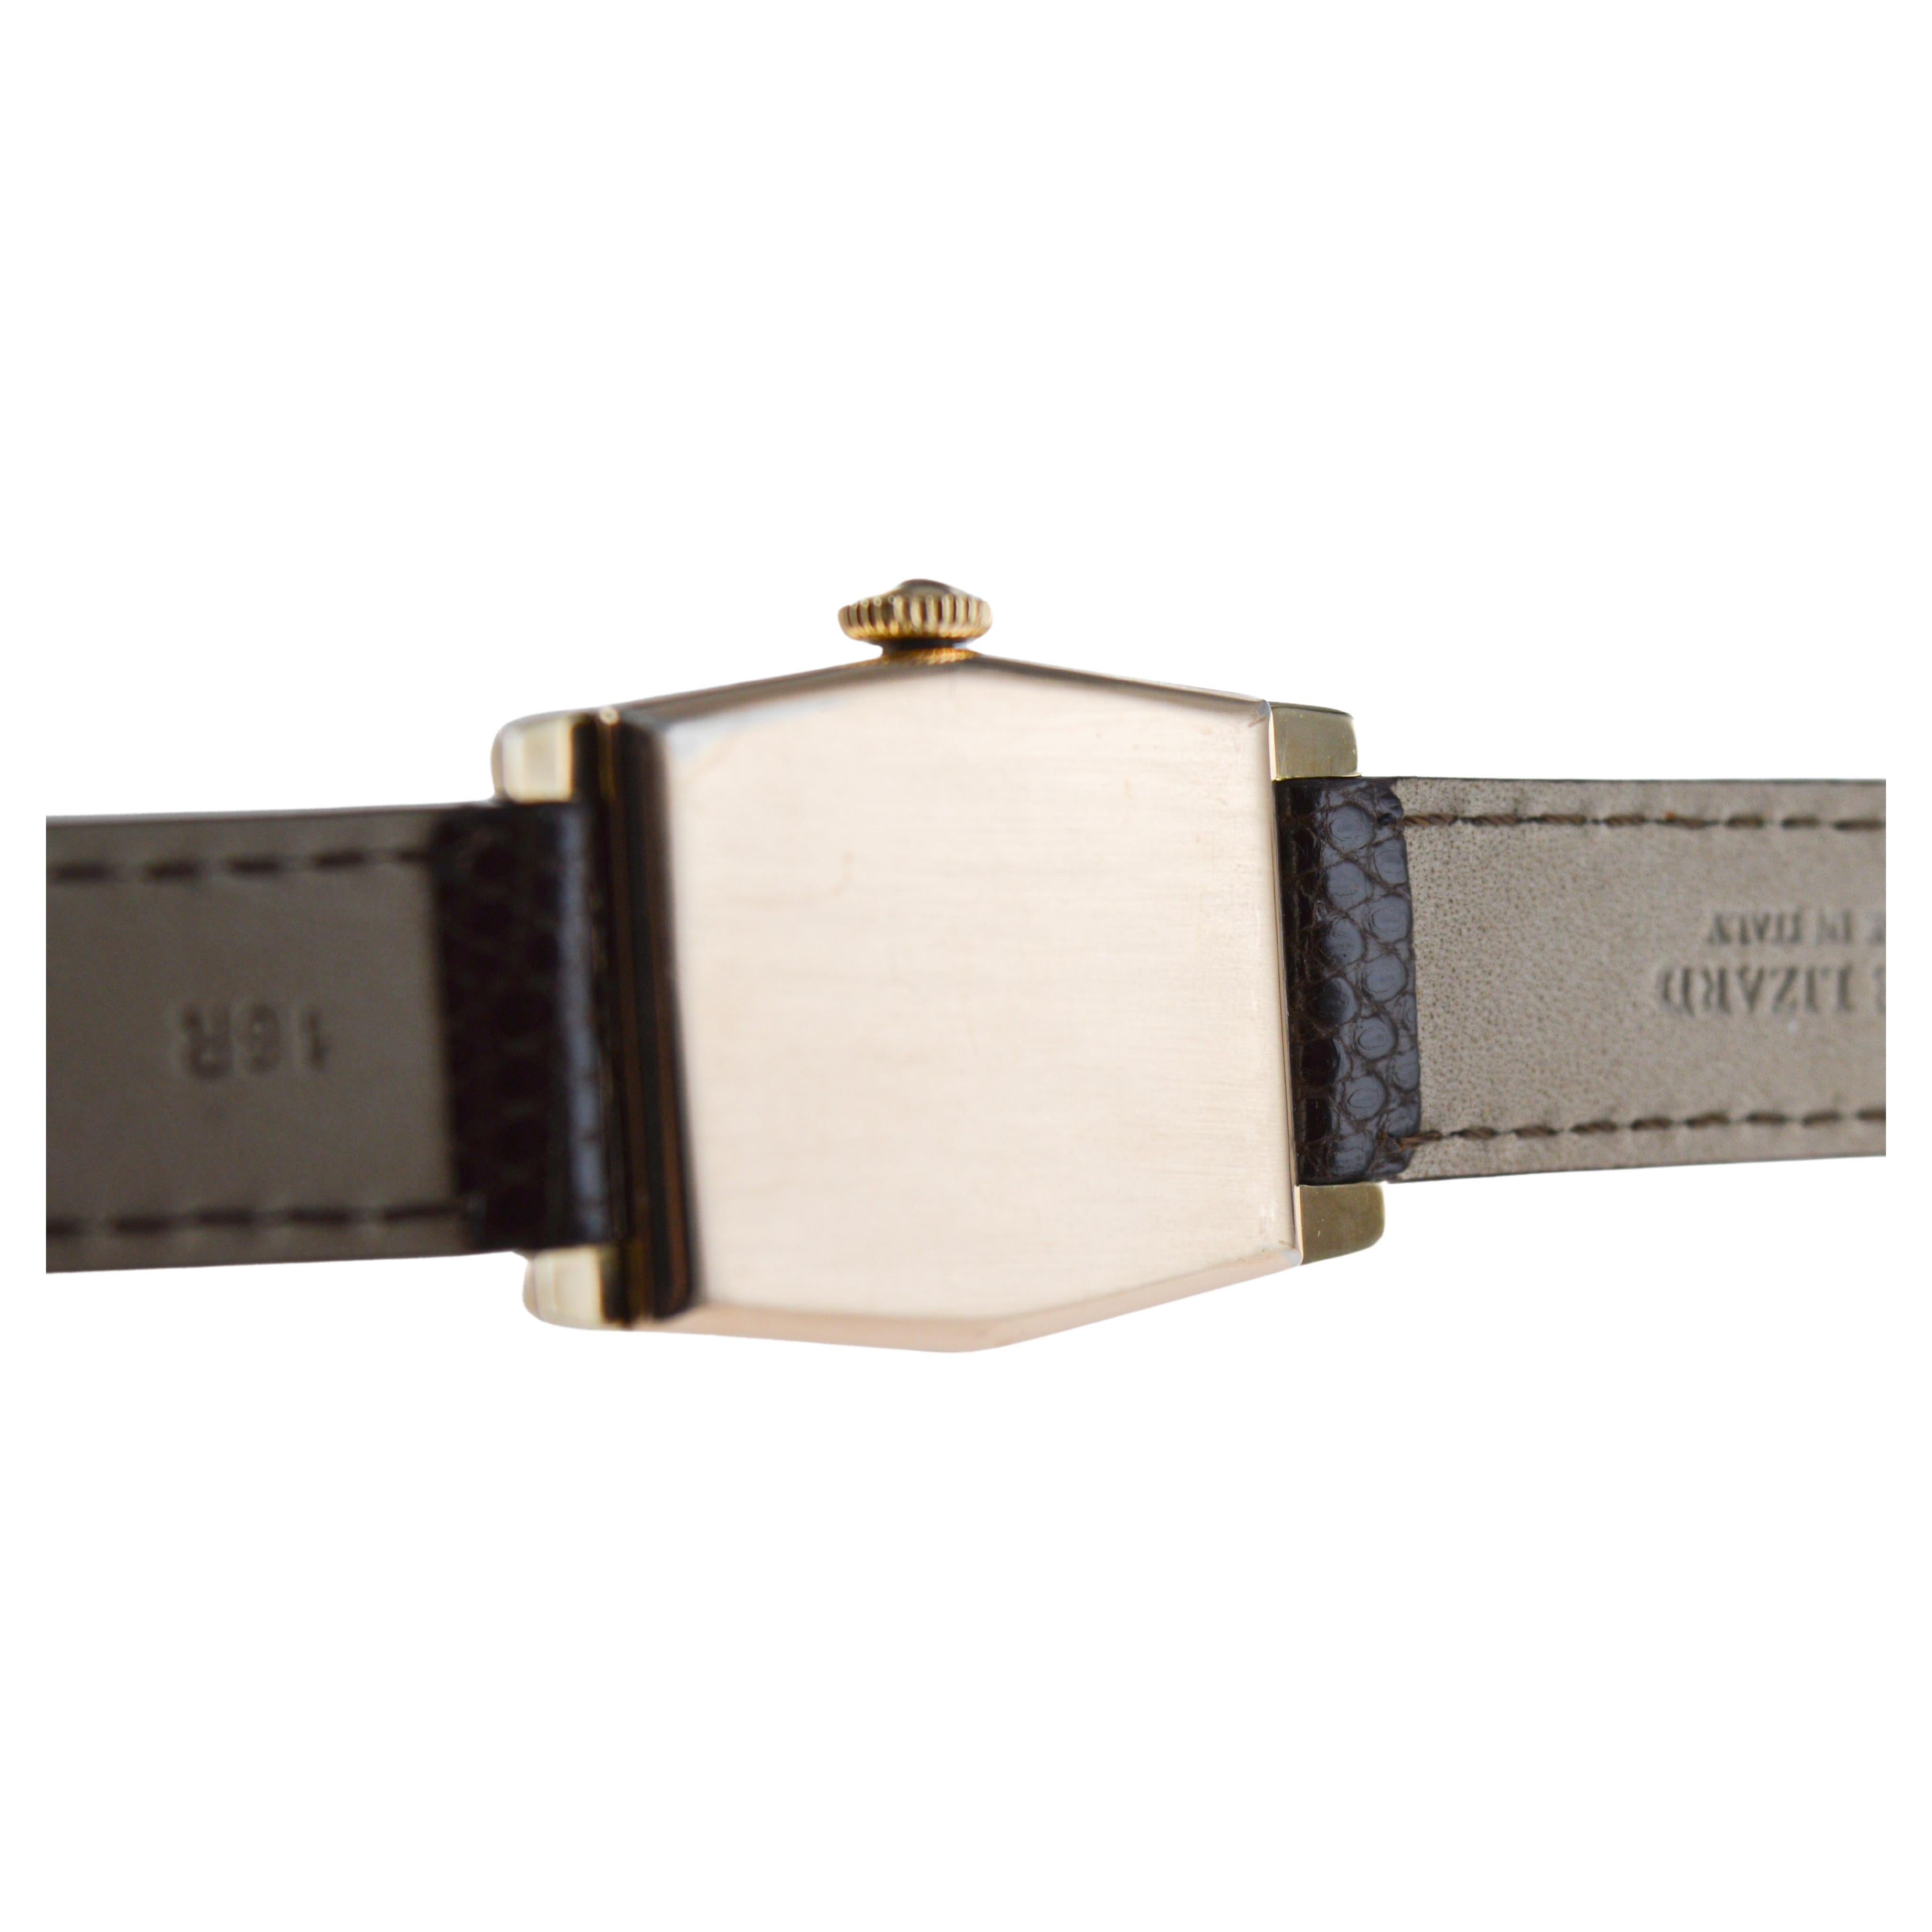 Waltham Yellow Gold Filled Art Deco Dual Time Watch with Original Dial and Strap (Montre à double fuseau horaire avec cadran et bracelet d'origine) 10